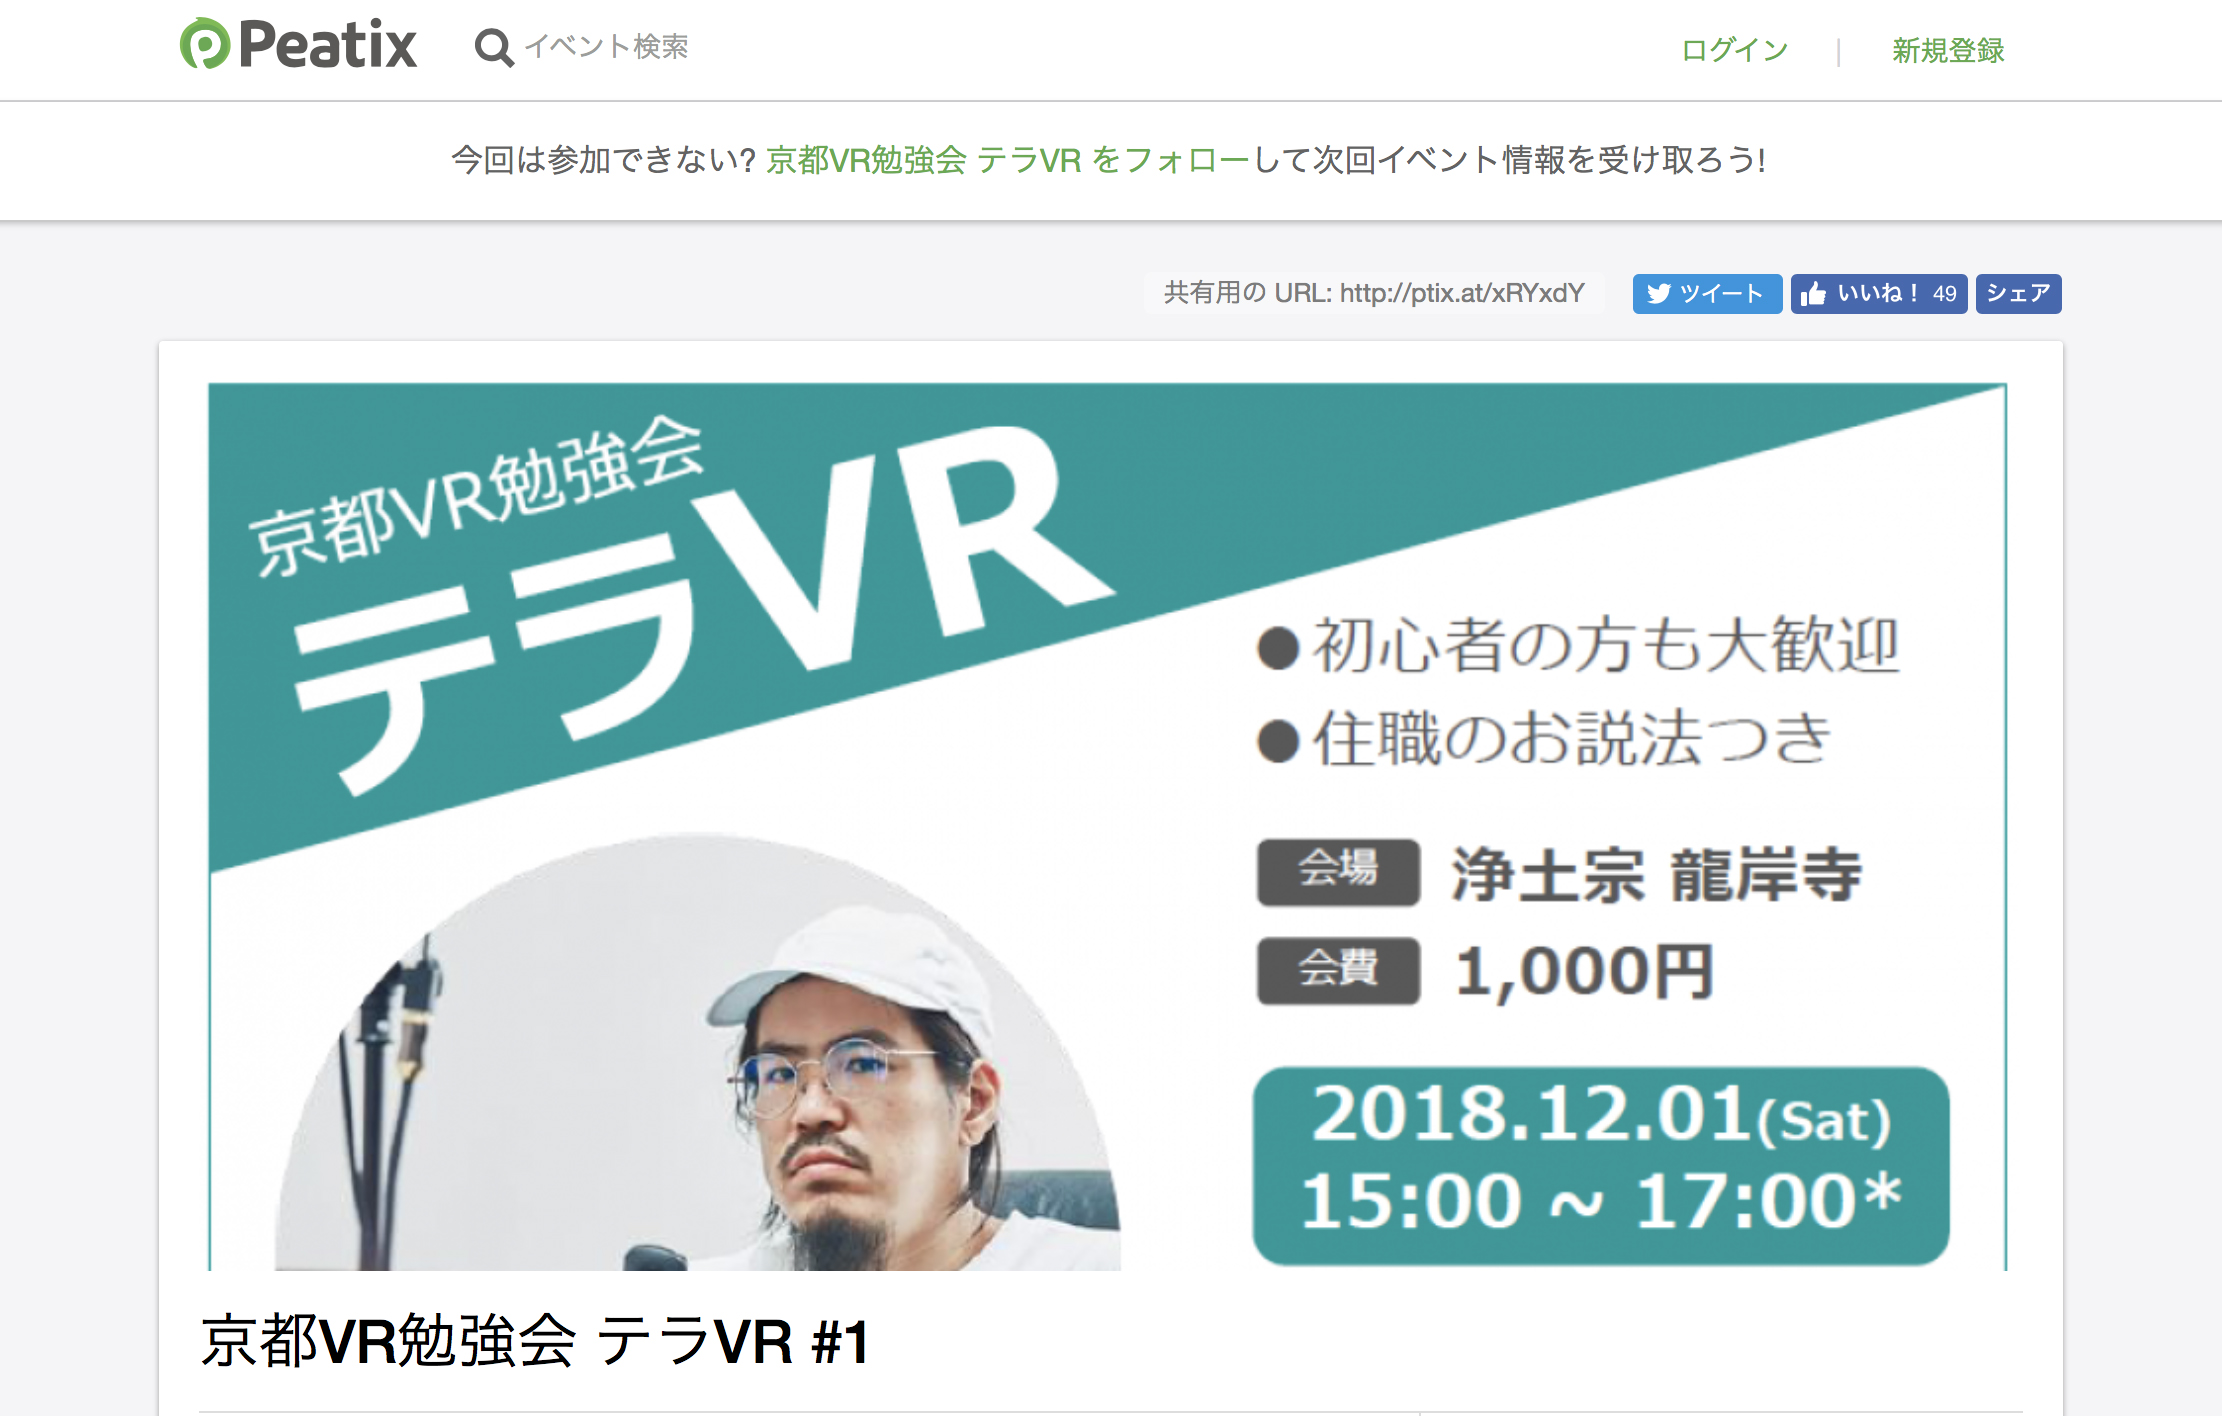 実写VRの勉強会「京都VR勉強会 テラVR #1」に渡邊徹が登壇